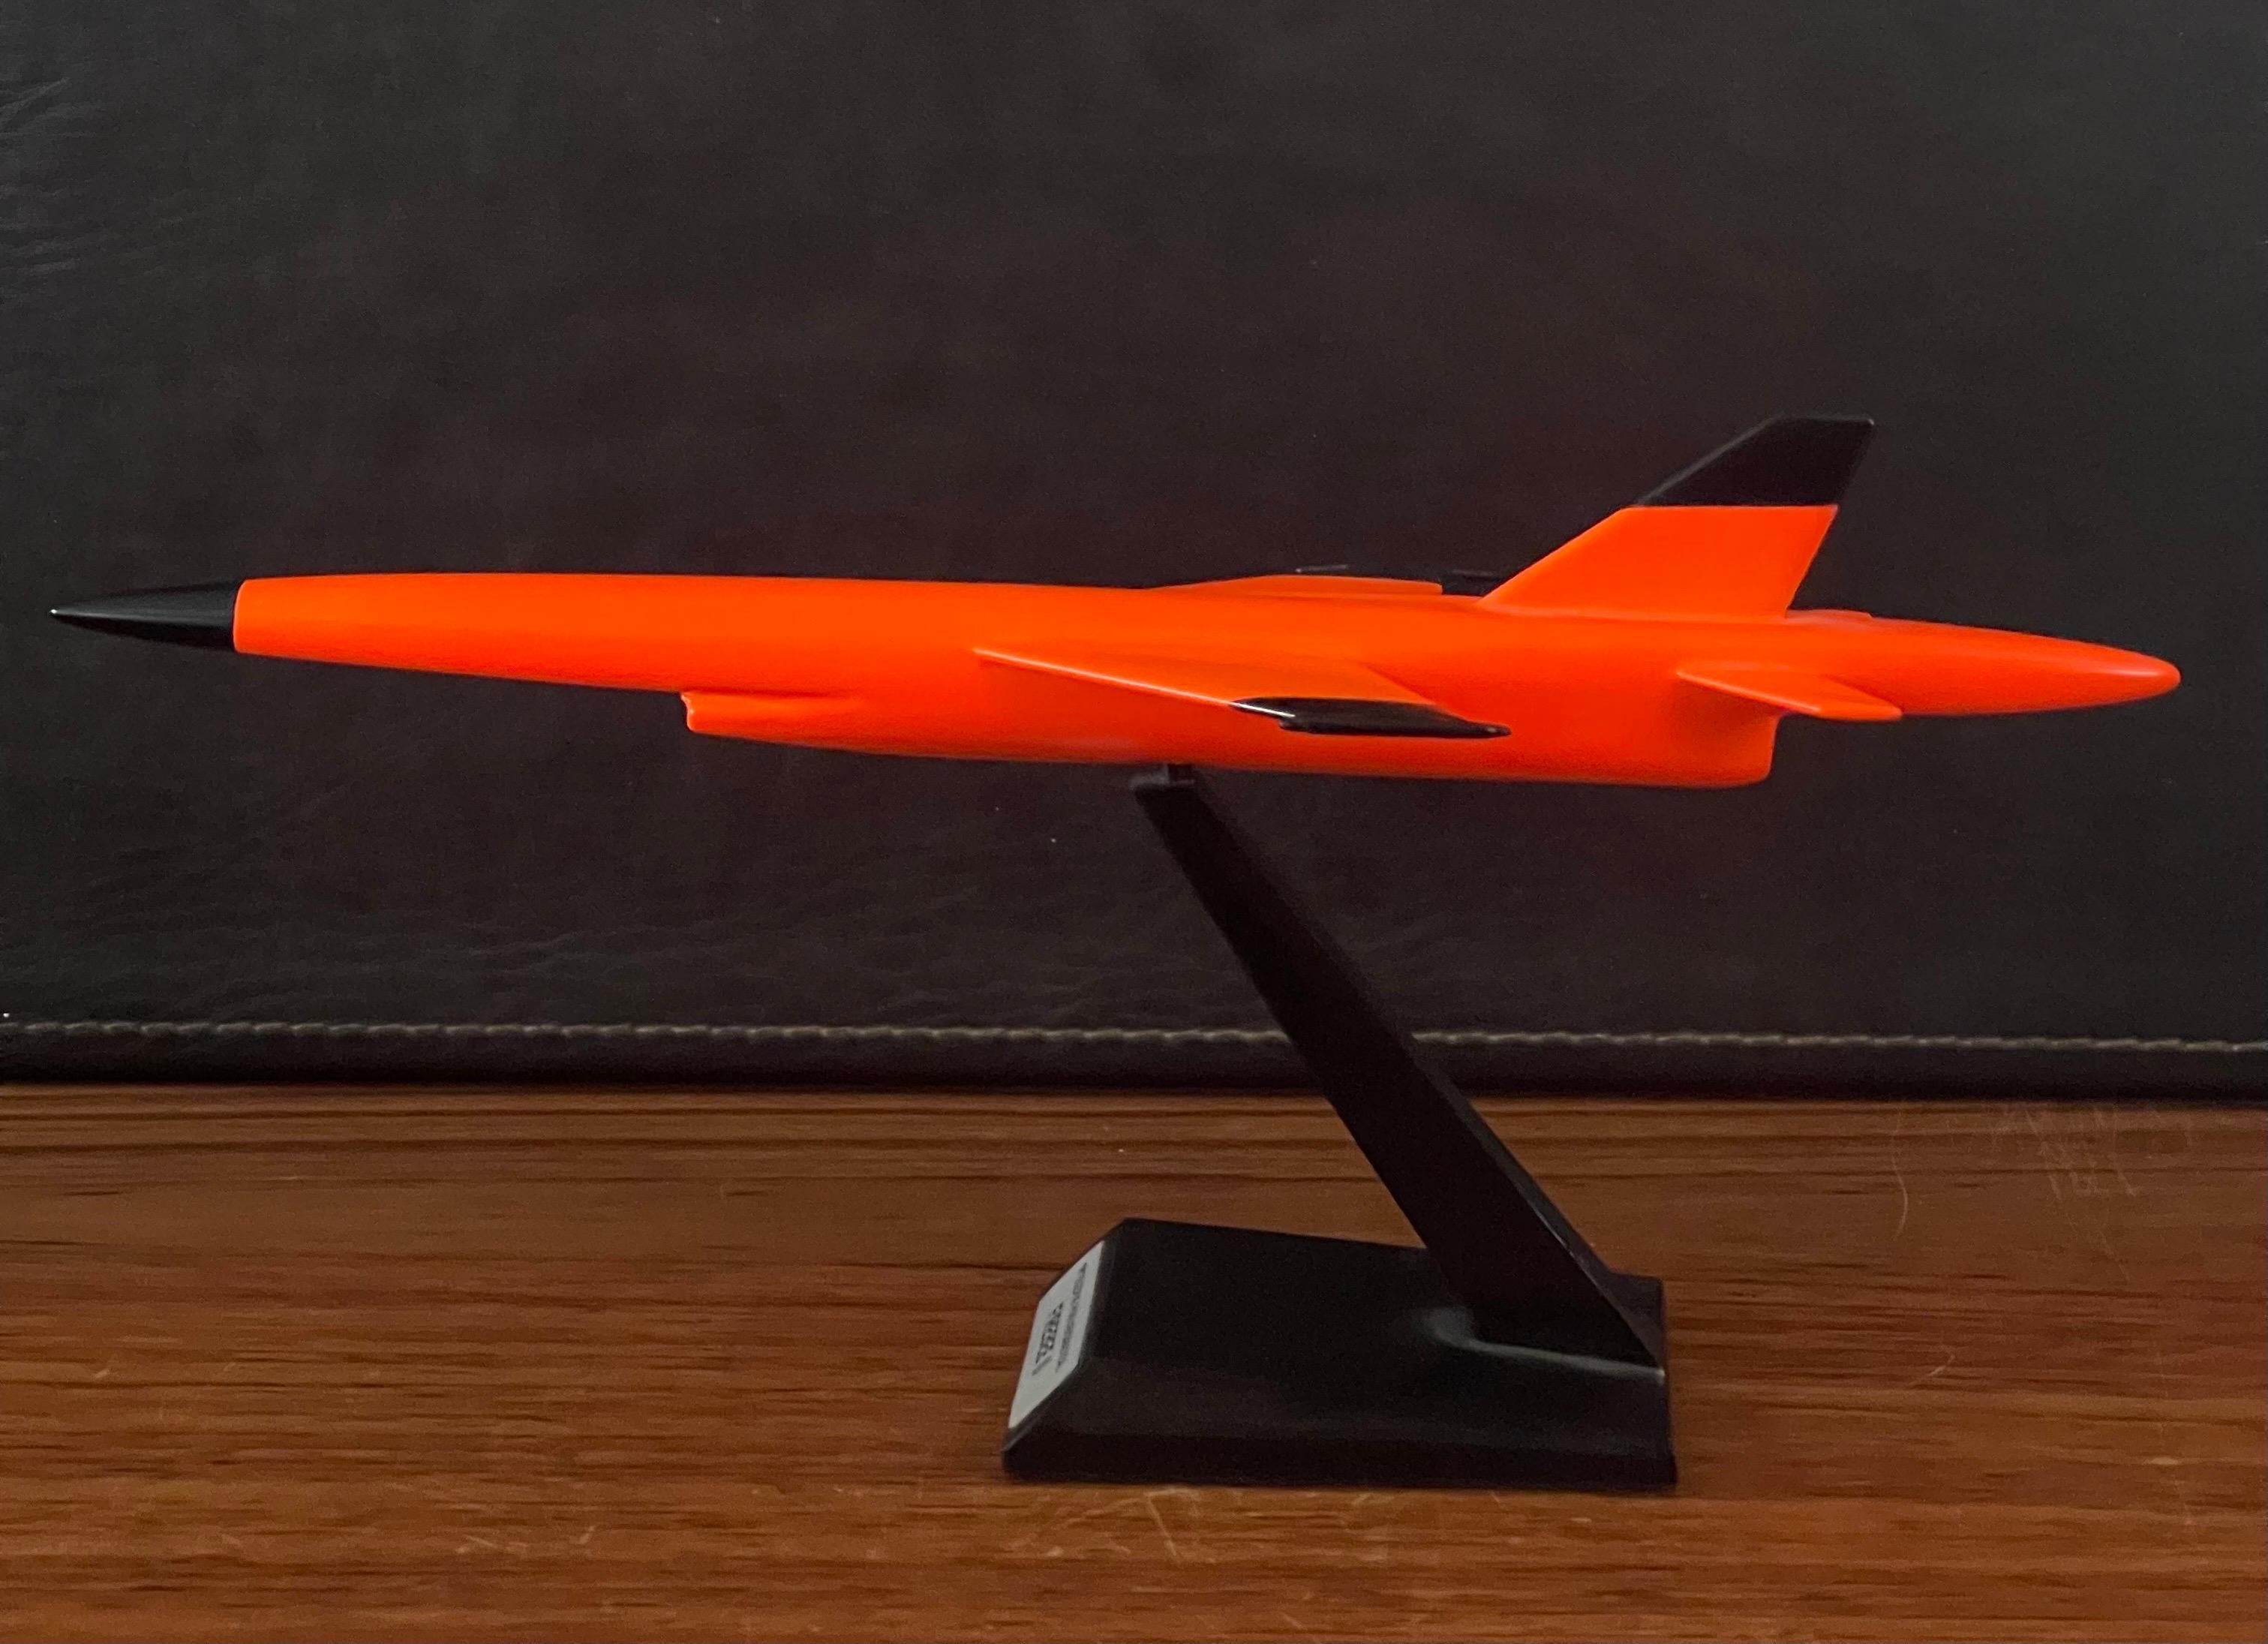 Teledyne Ryan Firebee II Drone Contractor's Desk Model For Sale 7